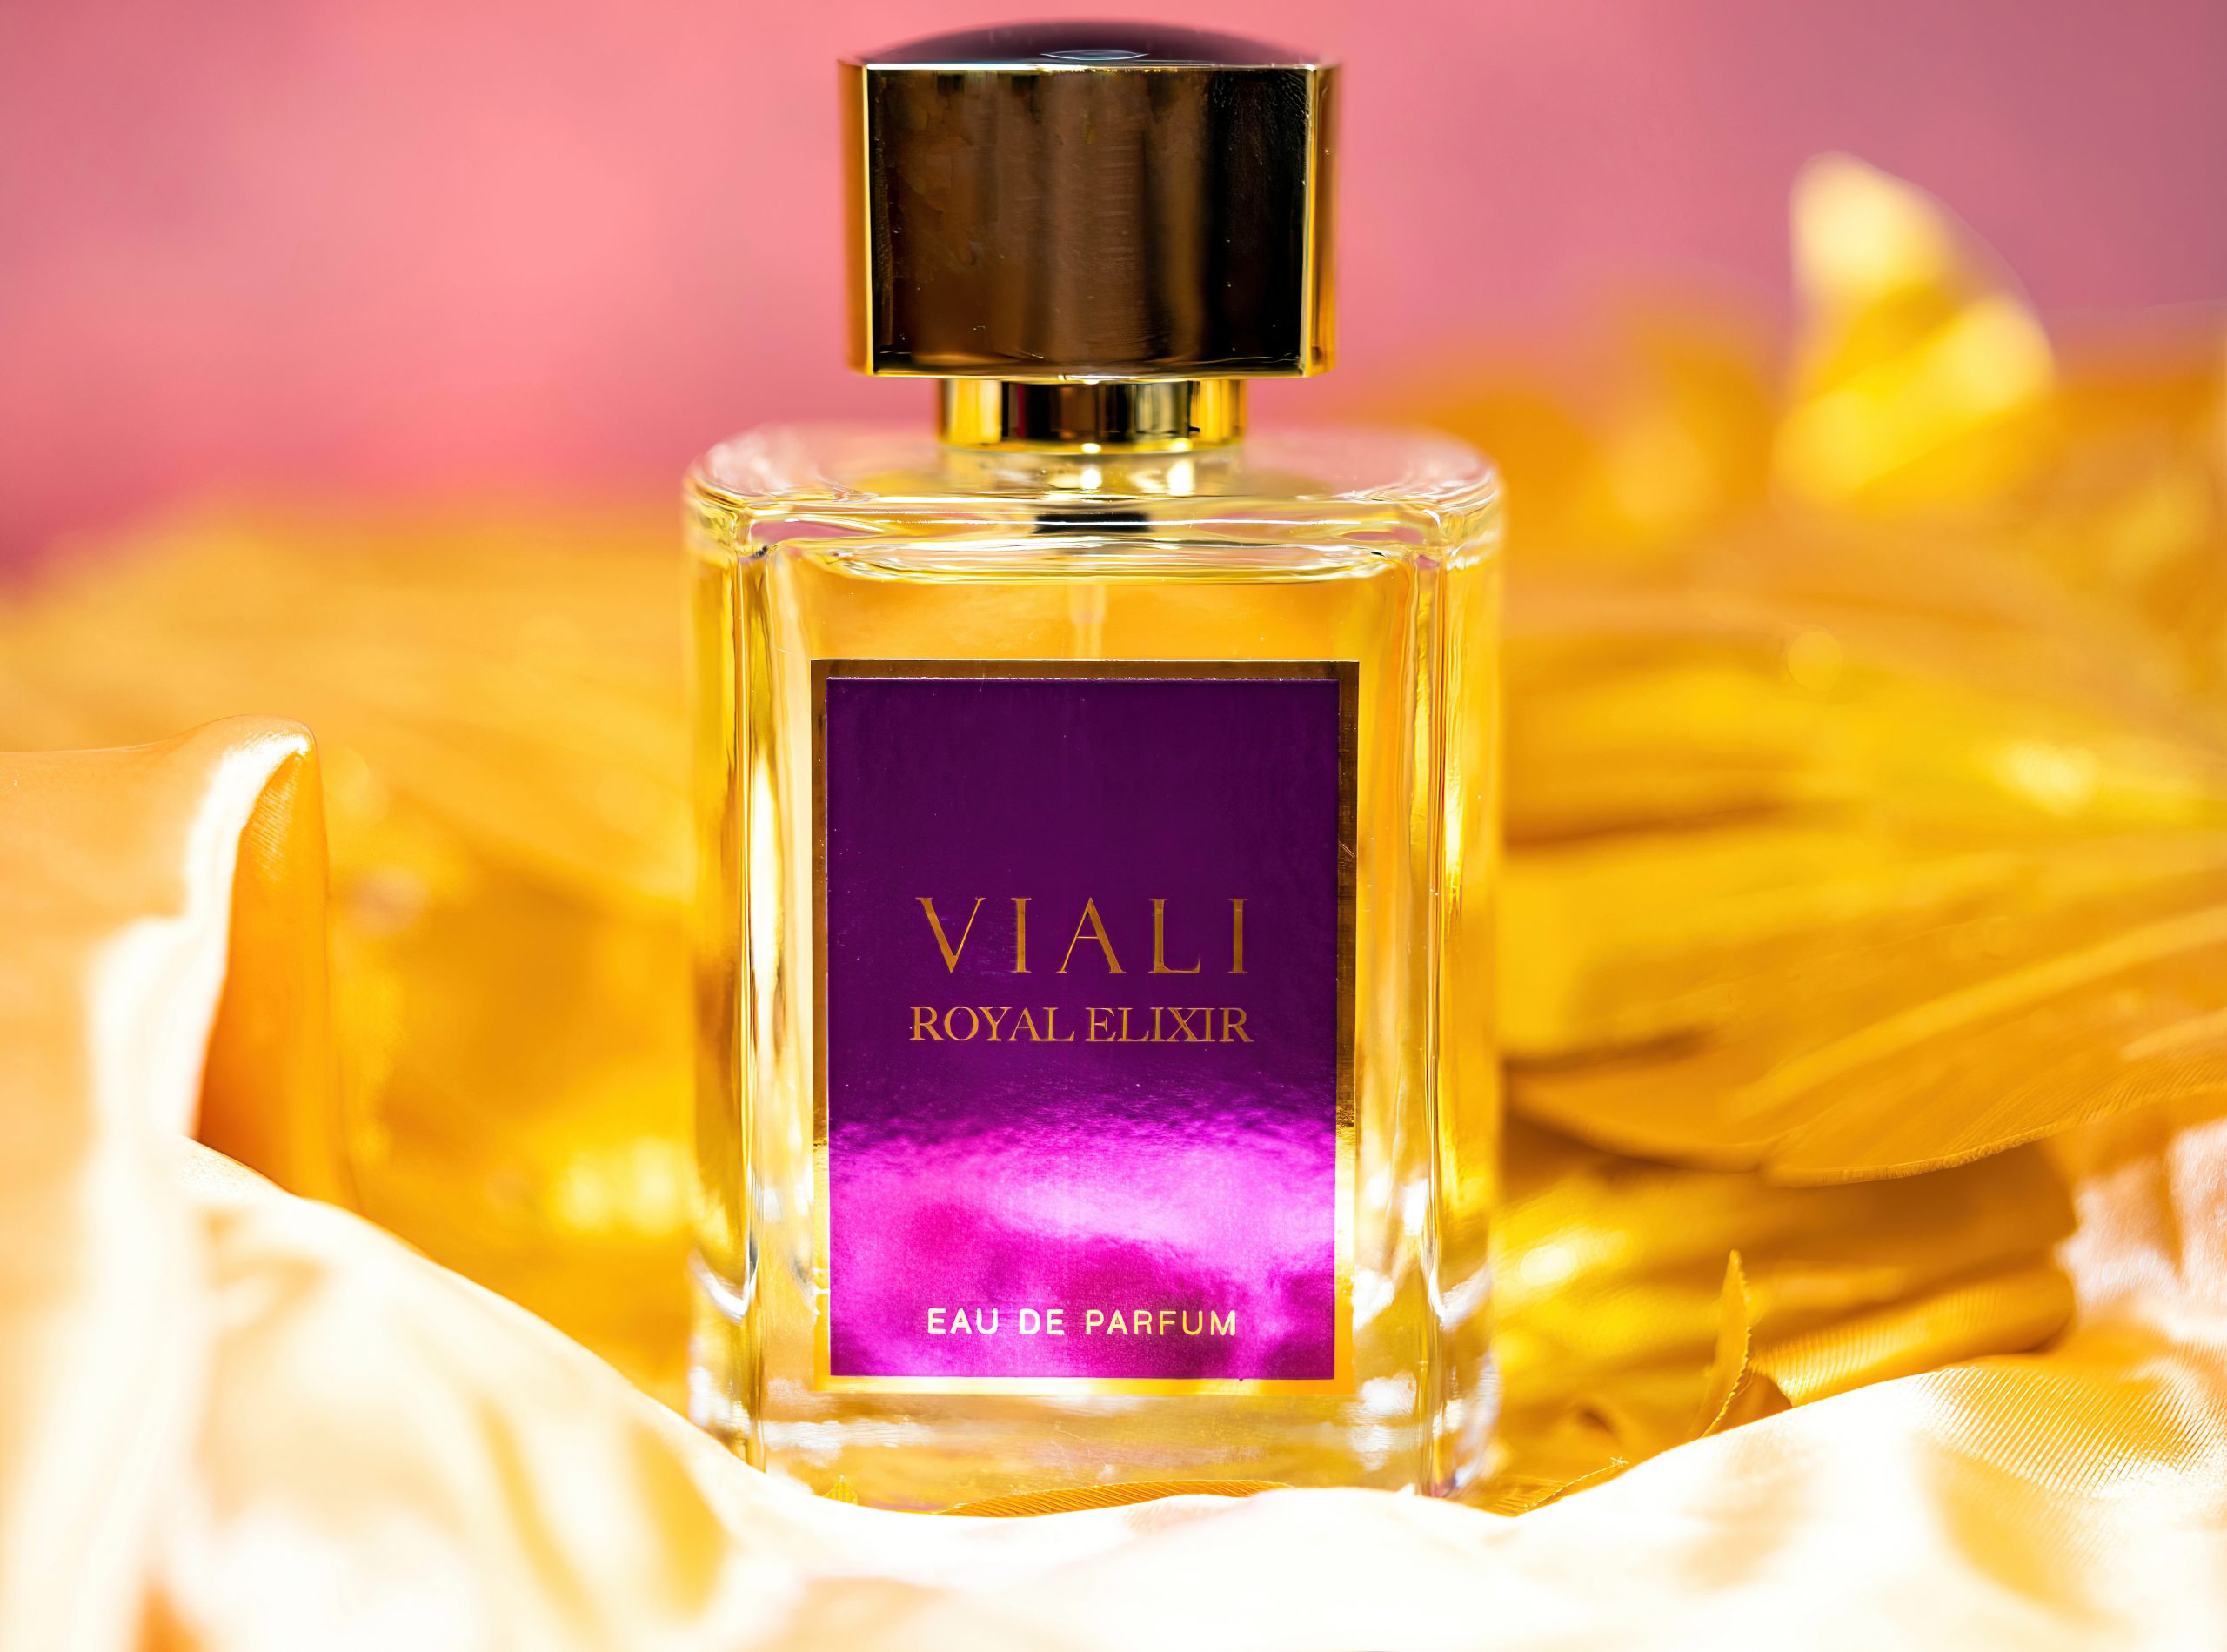 Viali Royal Elixir Eau De Parfum